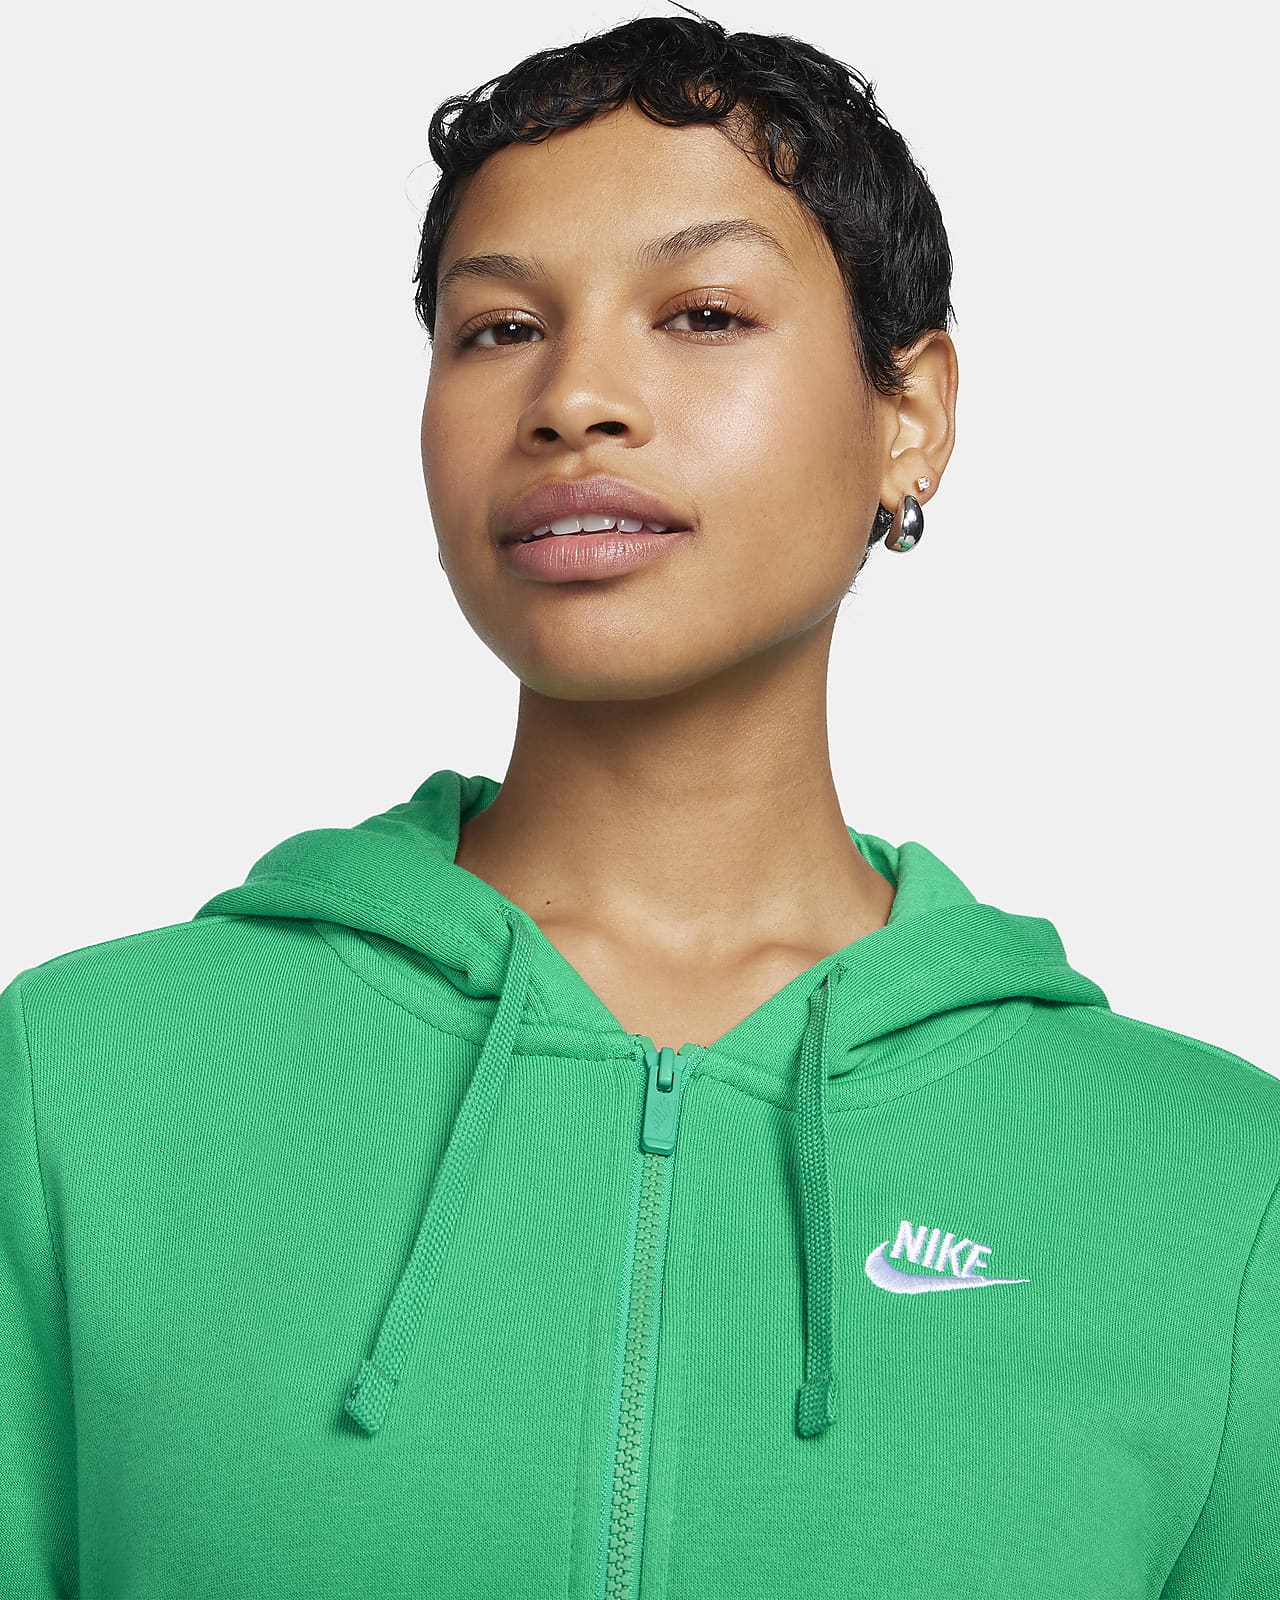 Women's Hoodies & Sweatshirts - Nike, ELL&VOO & more - rebel